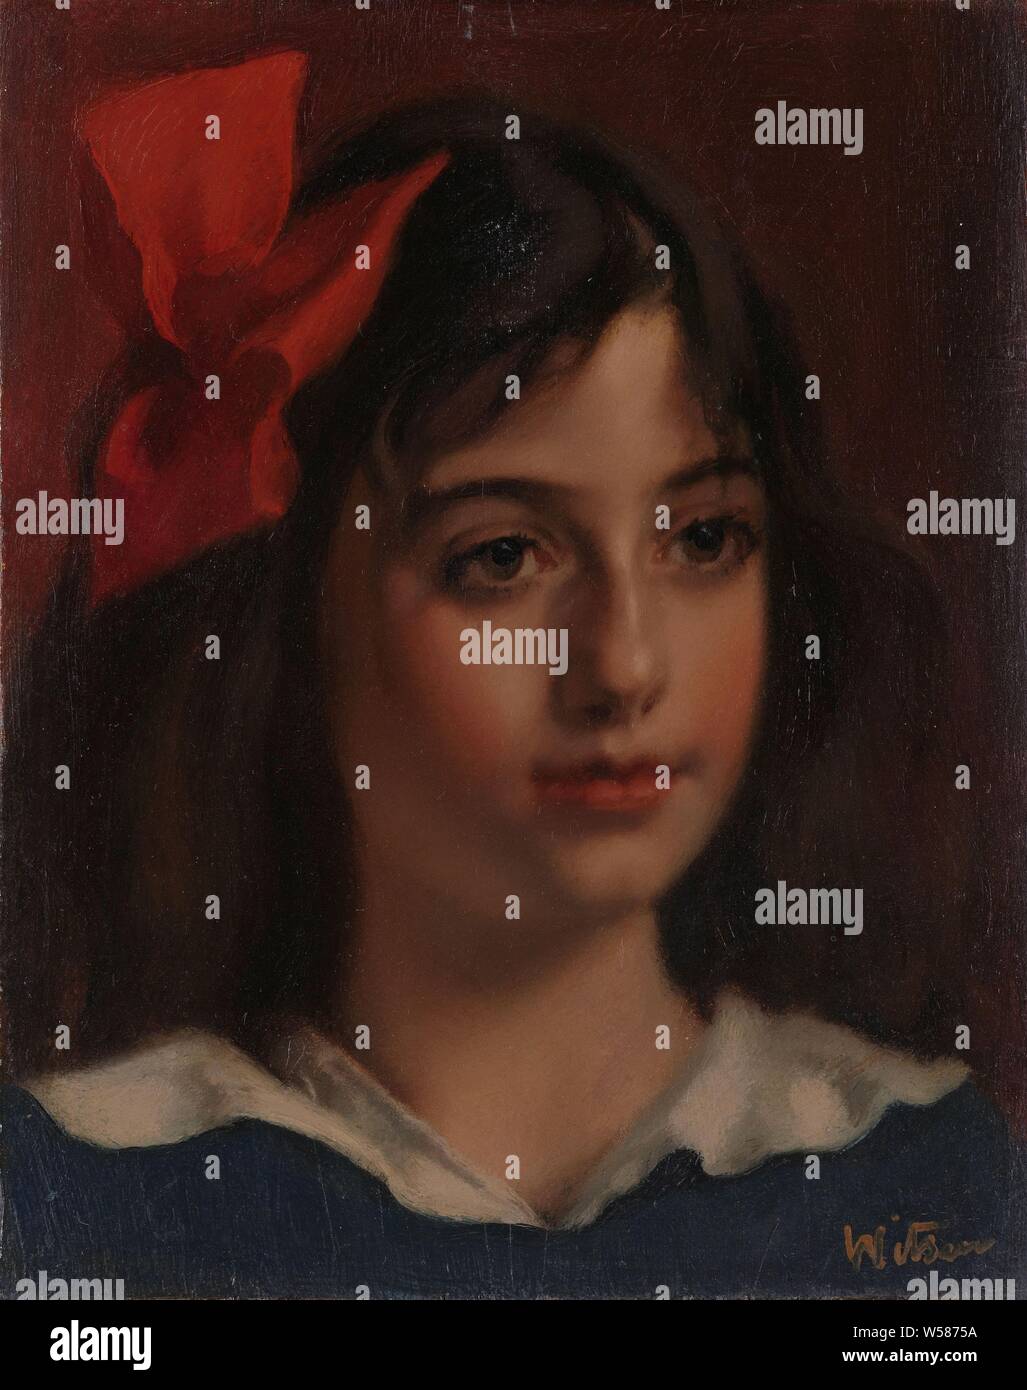 Ritratto di una ragazza, Ritratto di una ragazza con un fiocco rosso tra i capelli, tre quarti a destra., Willem Witsen, 1885 - 1922, pannello, pittura a olio (vernice), h cm 26 × W 21 cm d 10 cm Foto Stock